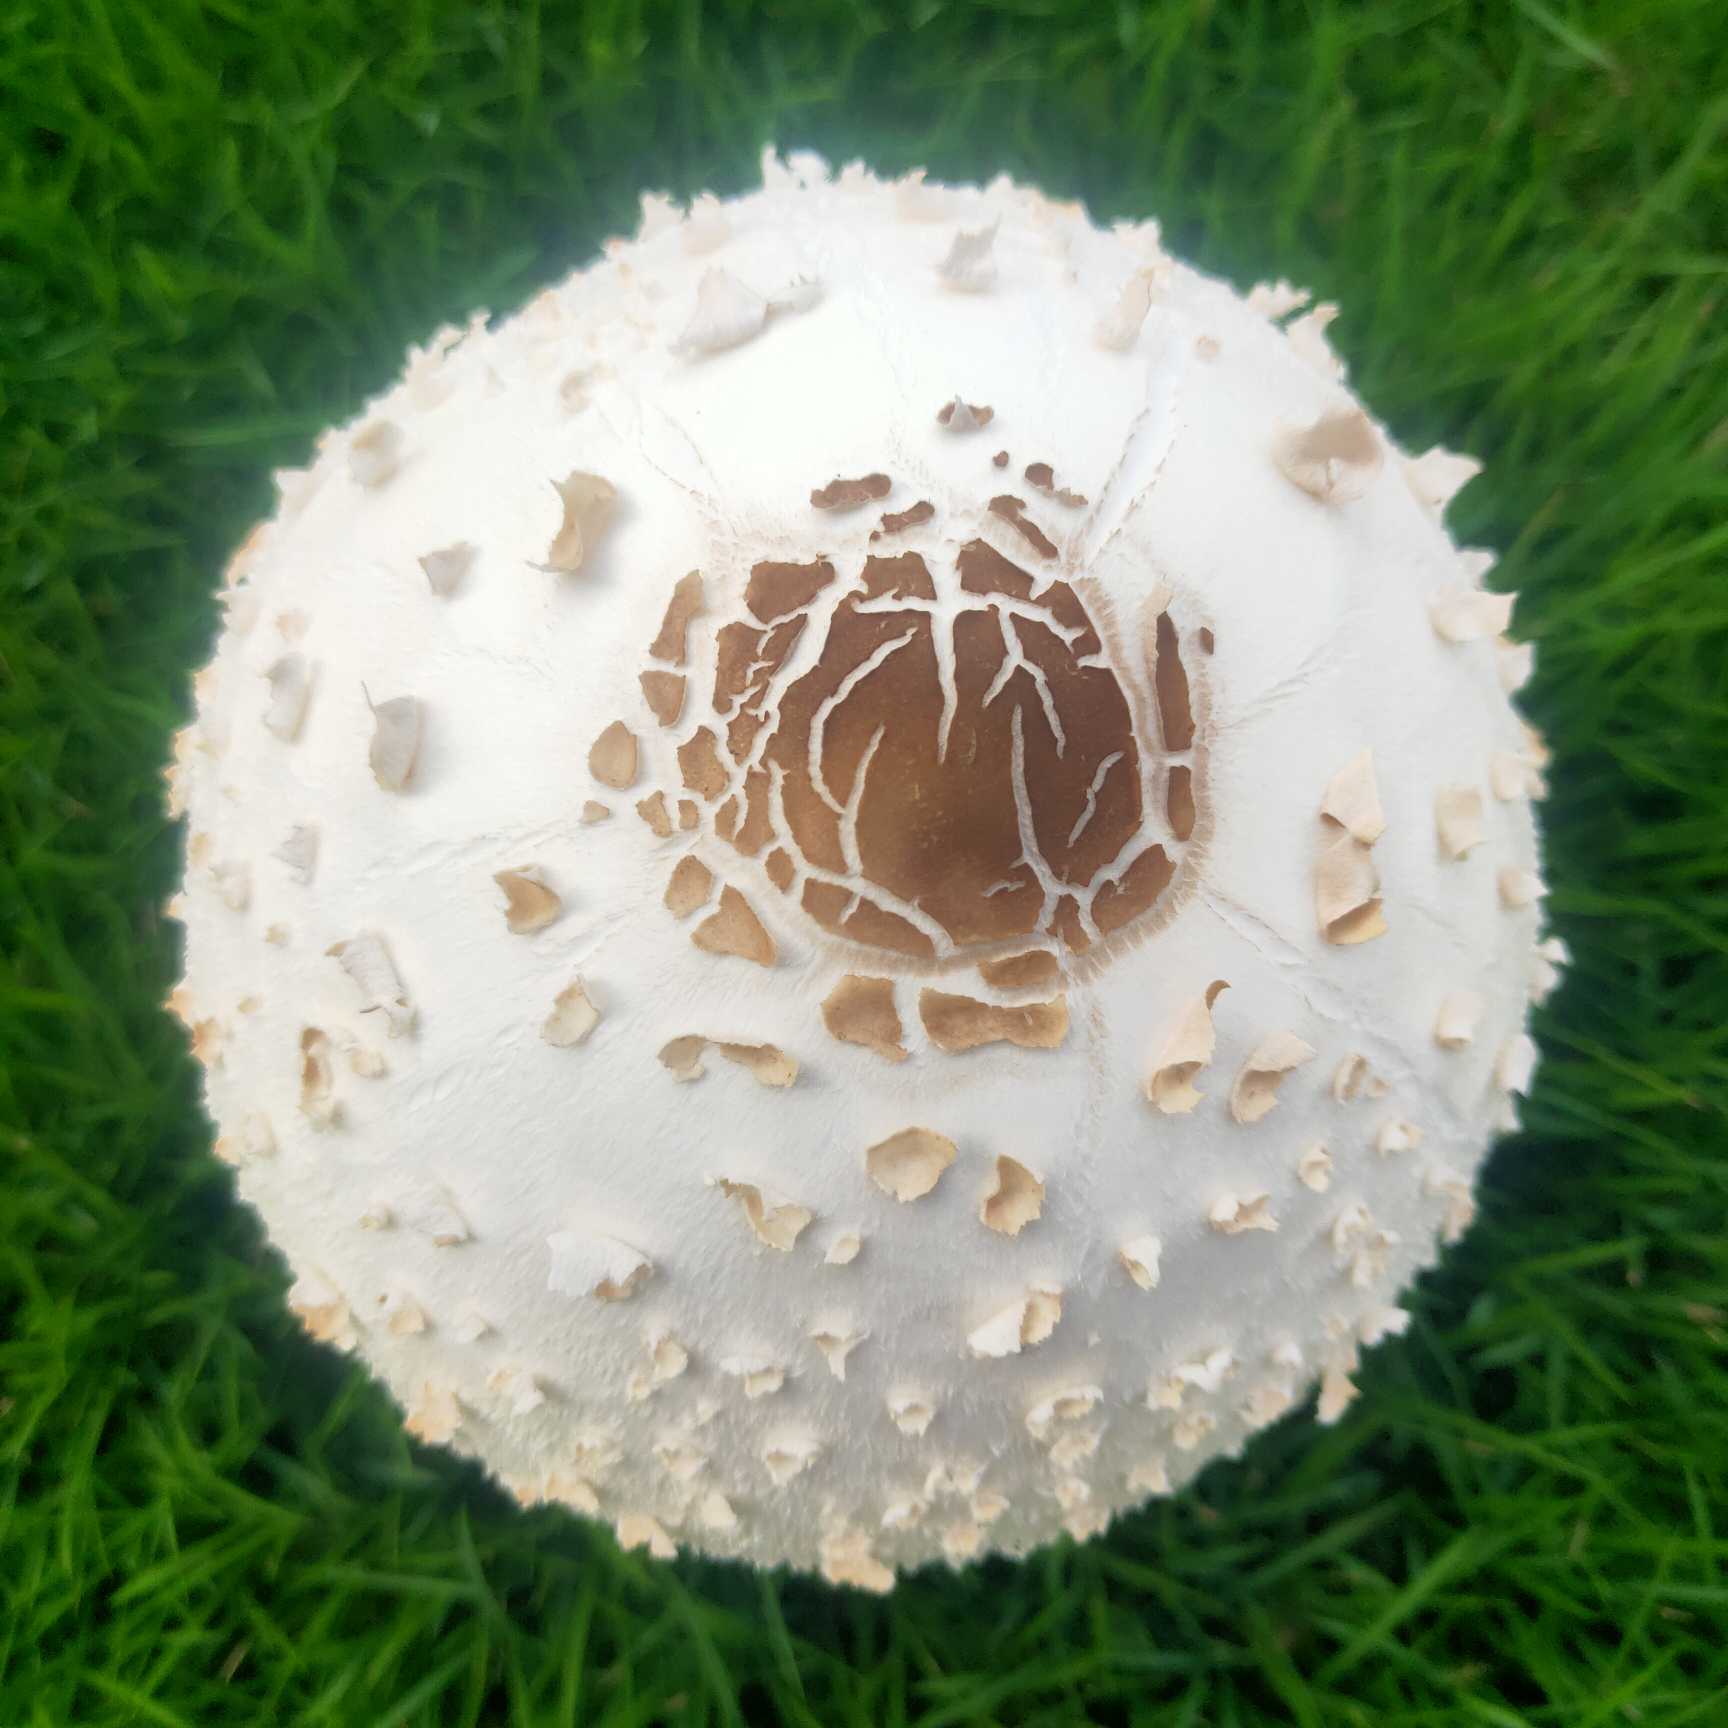 有坛友知道这草坪上新长出来的蘑菇能吃吗?